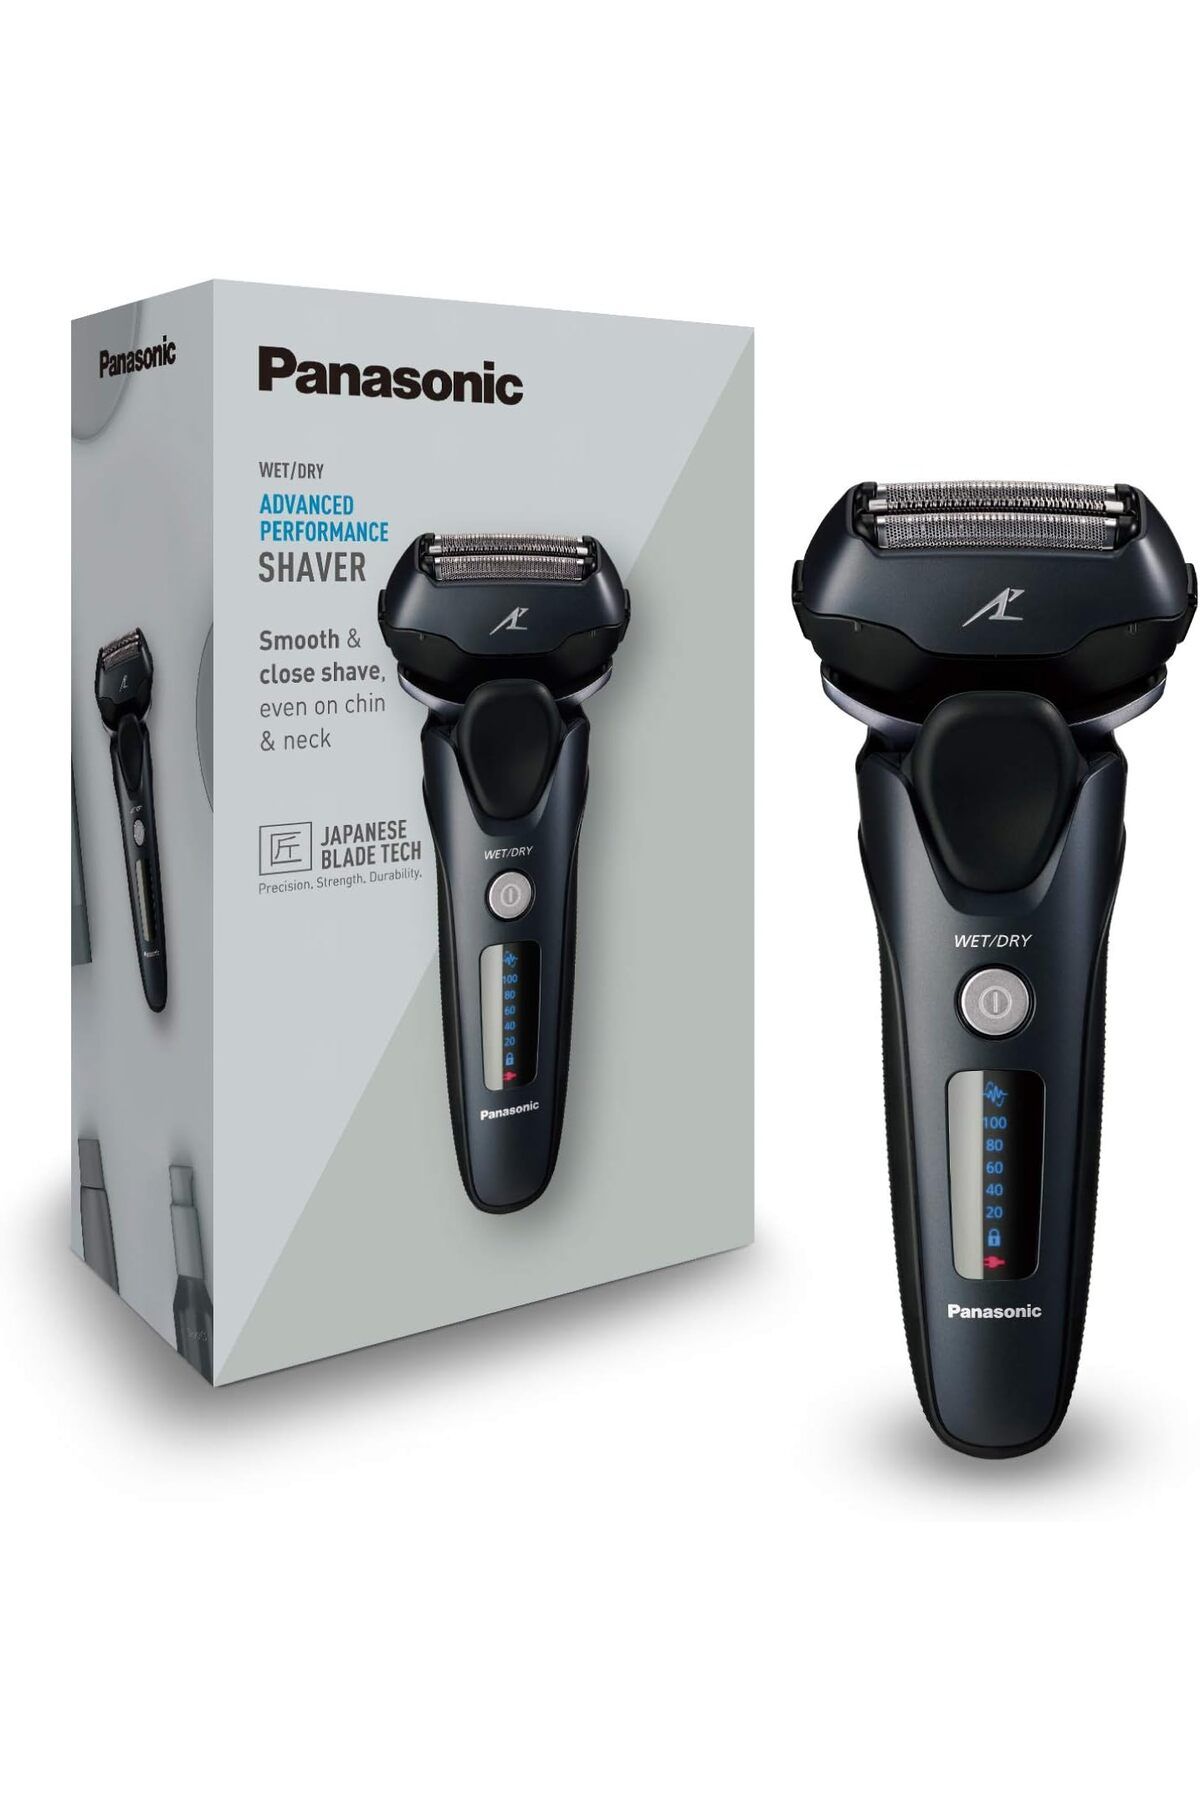 Panasonic Lineer Motorlu 3 Yönlü Başlıklı Erkek Elektrikli Tıraş Makinesi, Uzun Bıçak Dahil, Siyah